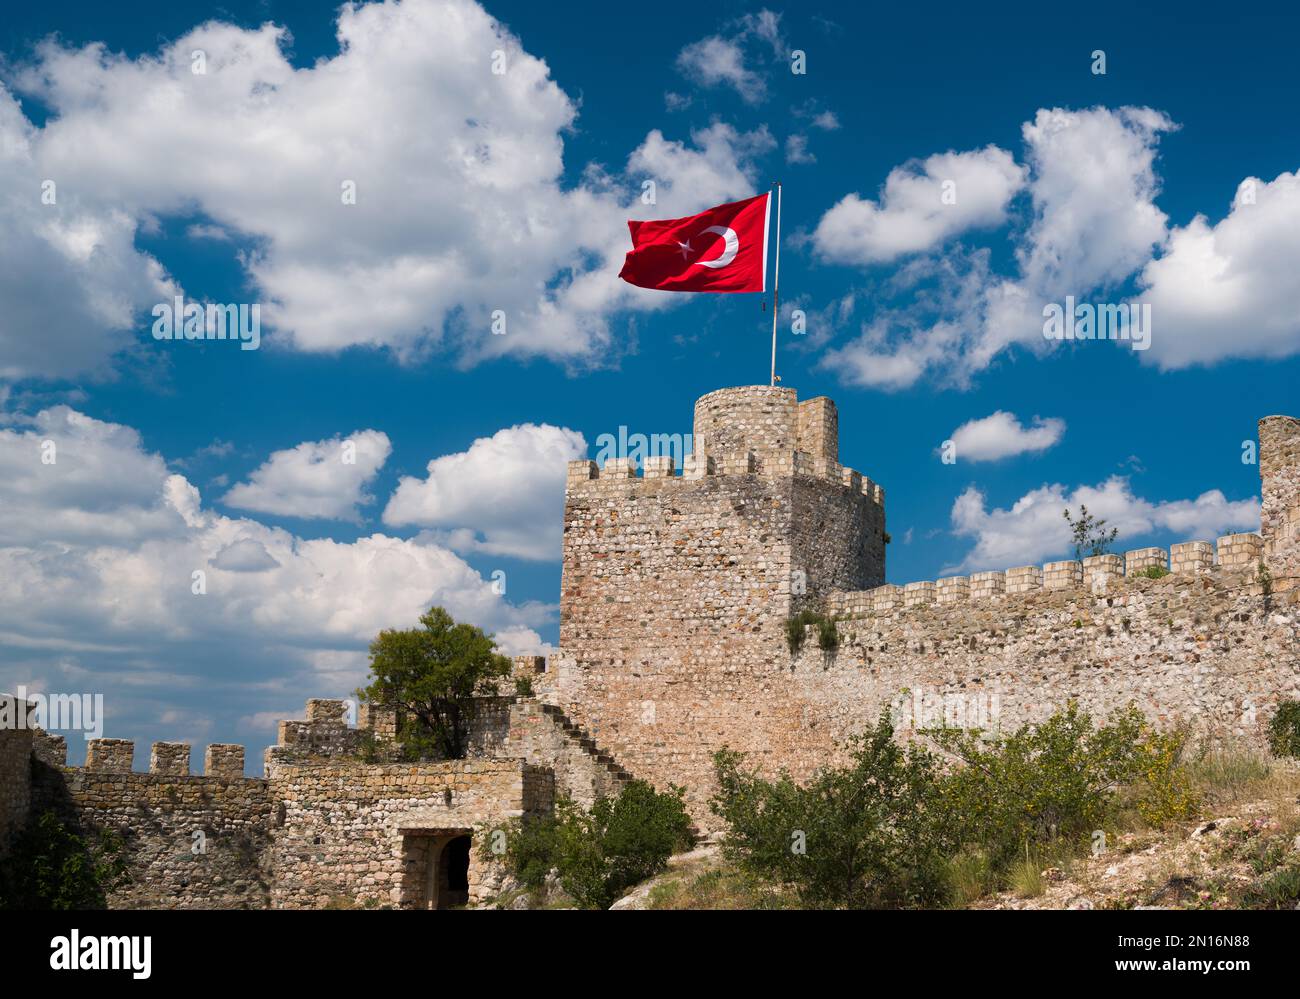 Historisches türkisches Schloss und türkische Flagge. Türkische Flagge und Schloss am Himmel an einem wunderschönen Tag. Stockfoto